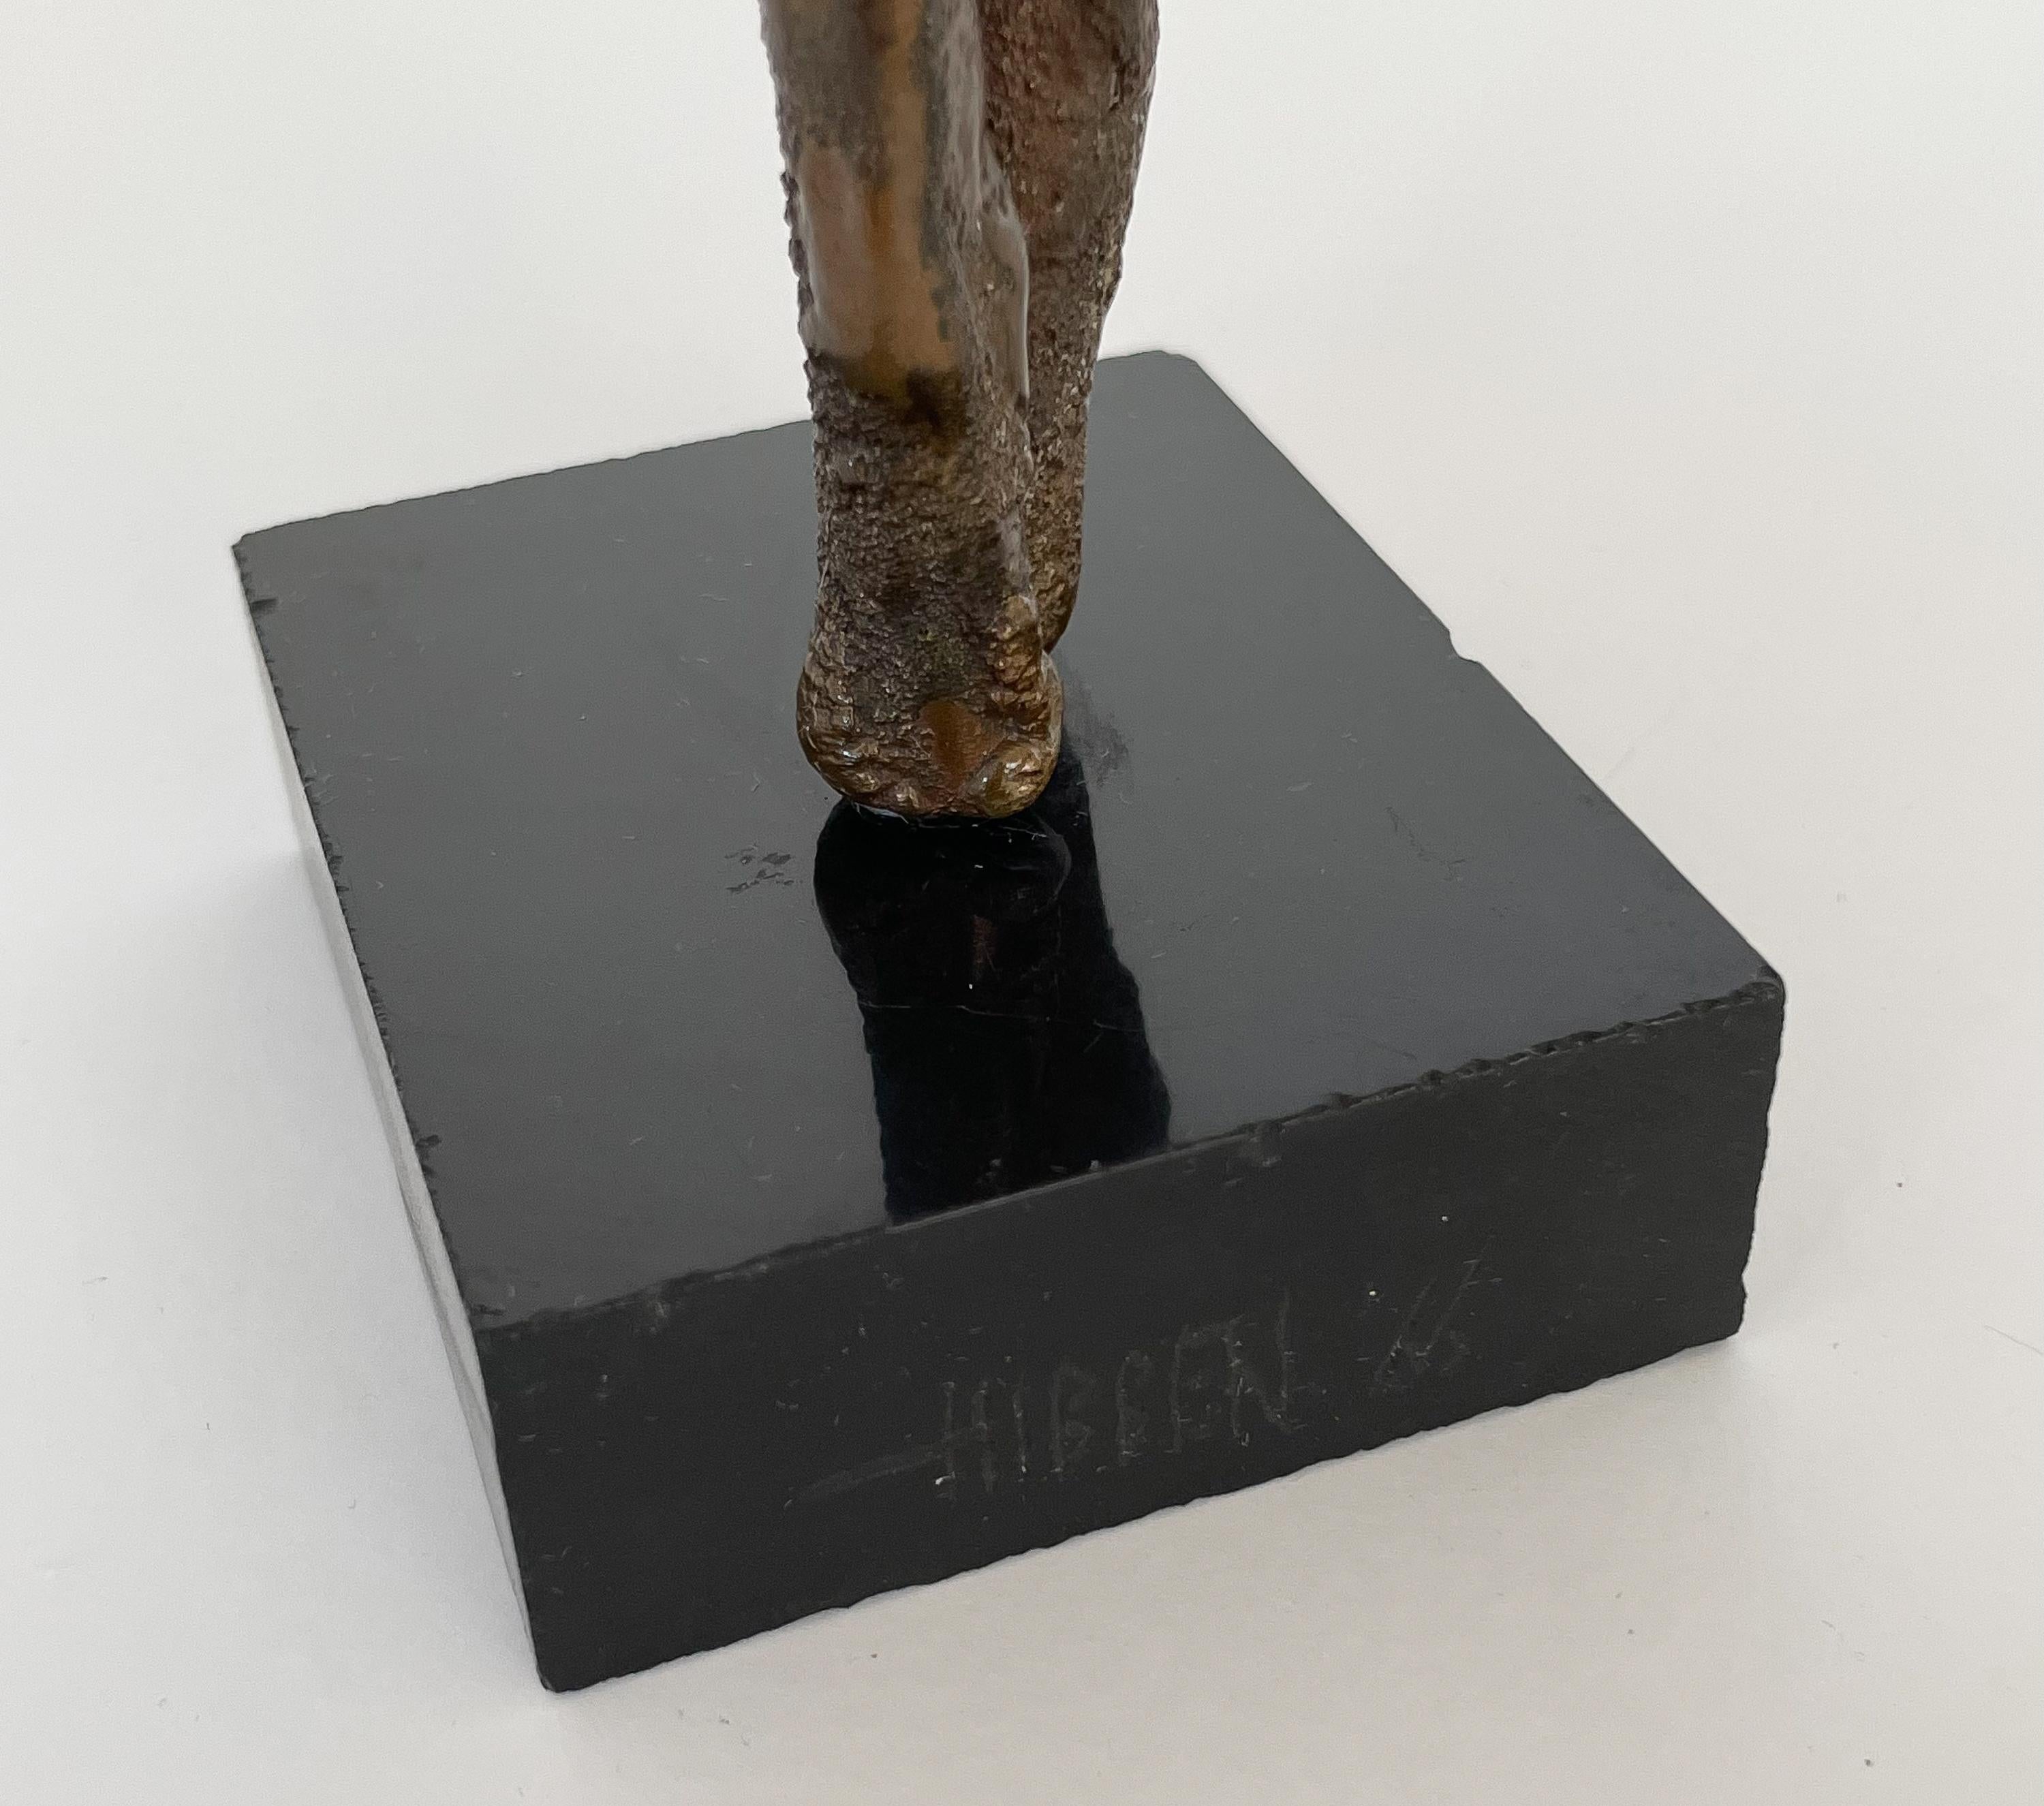 Patinated Thomas Hibben Bronze Sculpture, 1966